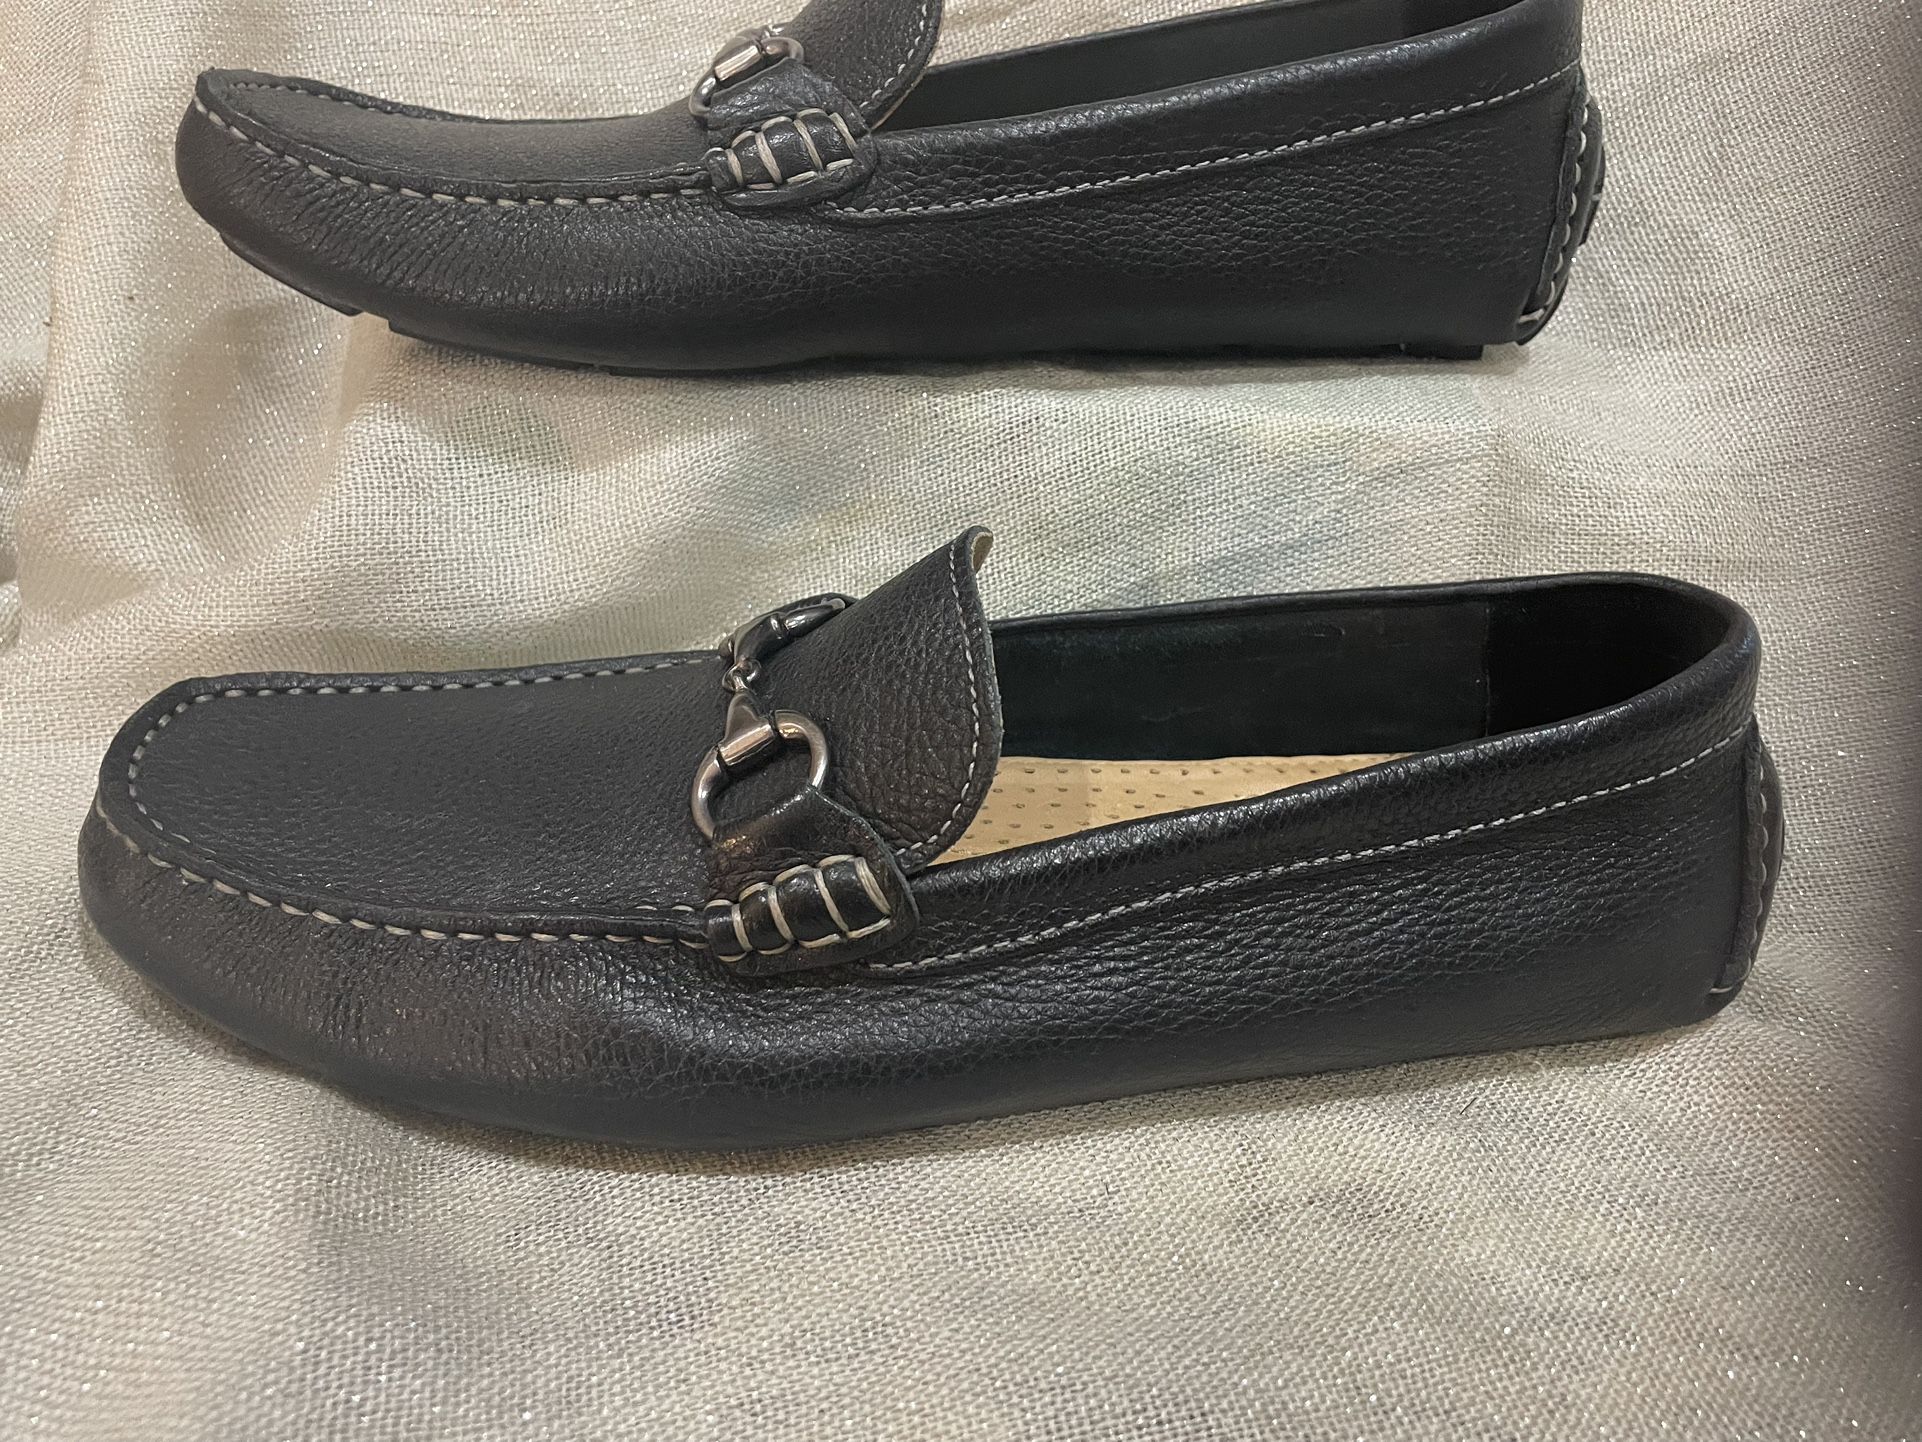 Men's Black leather loafer/slip on 10. for Sale in Creek, - OfferUp